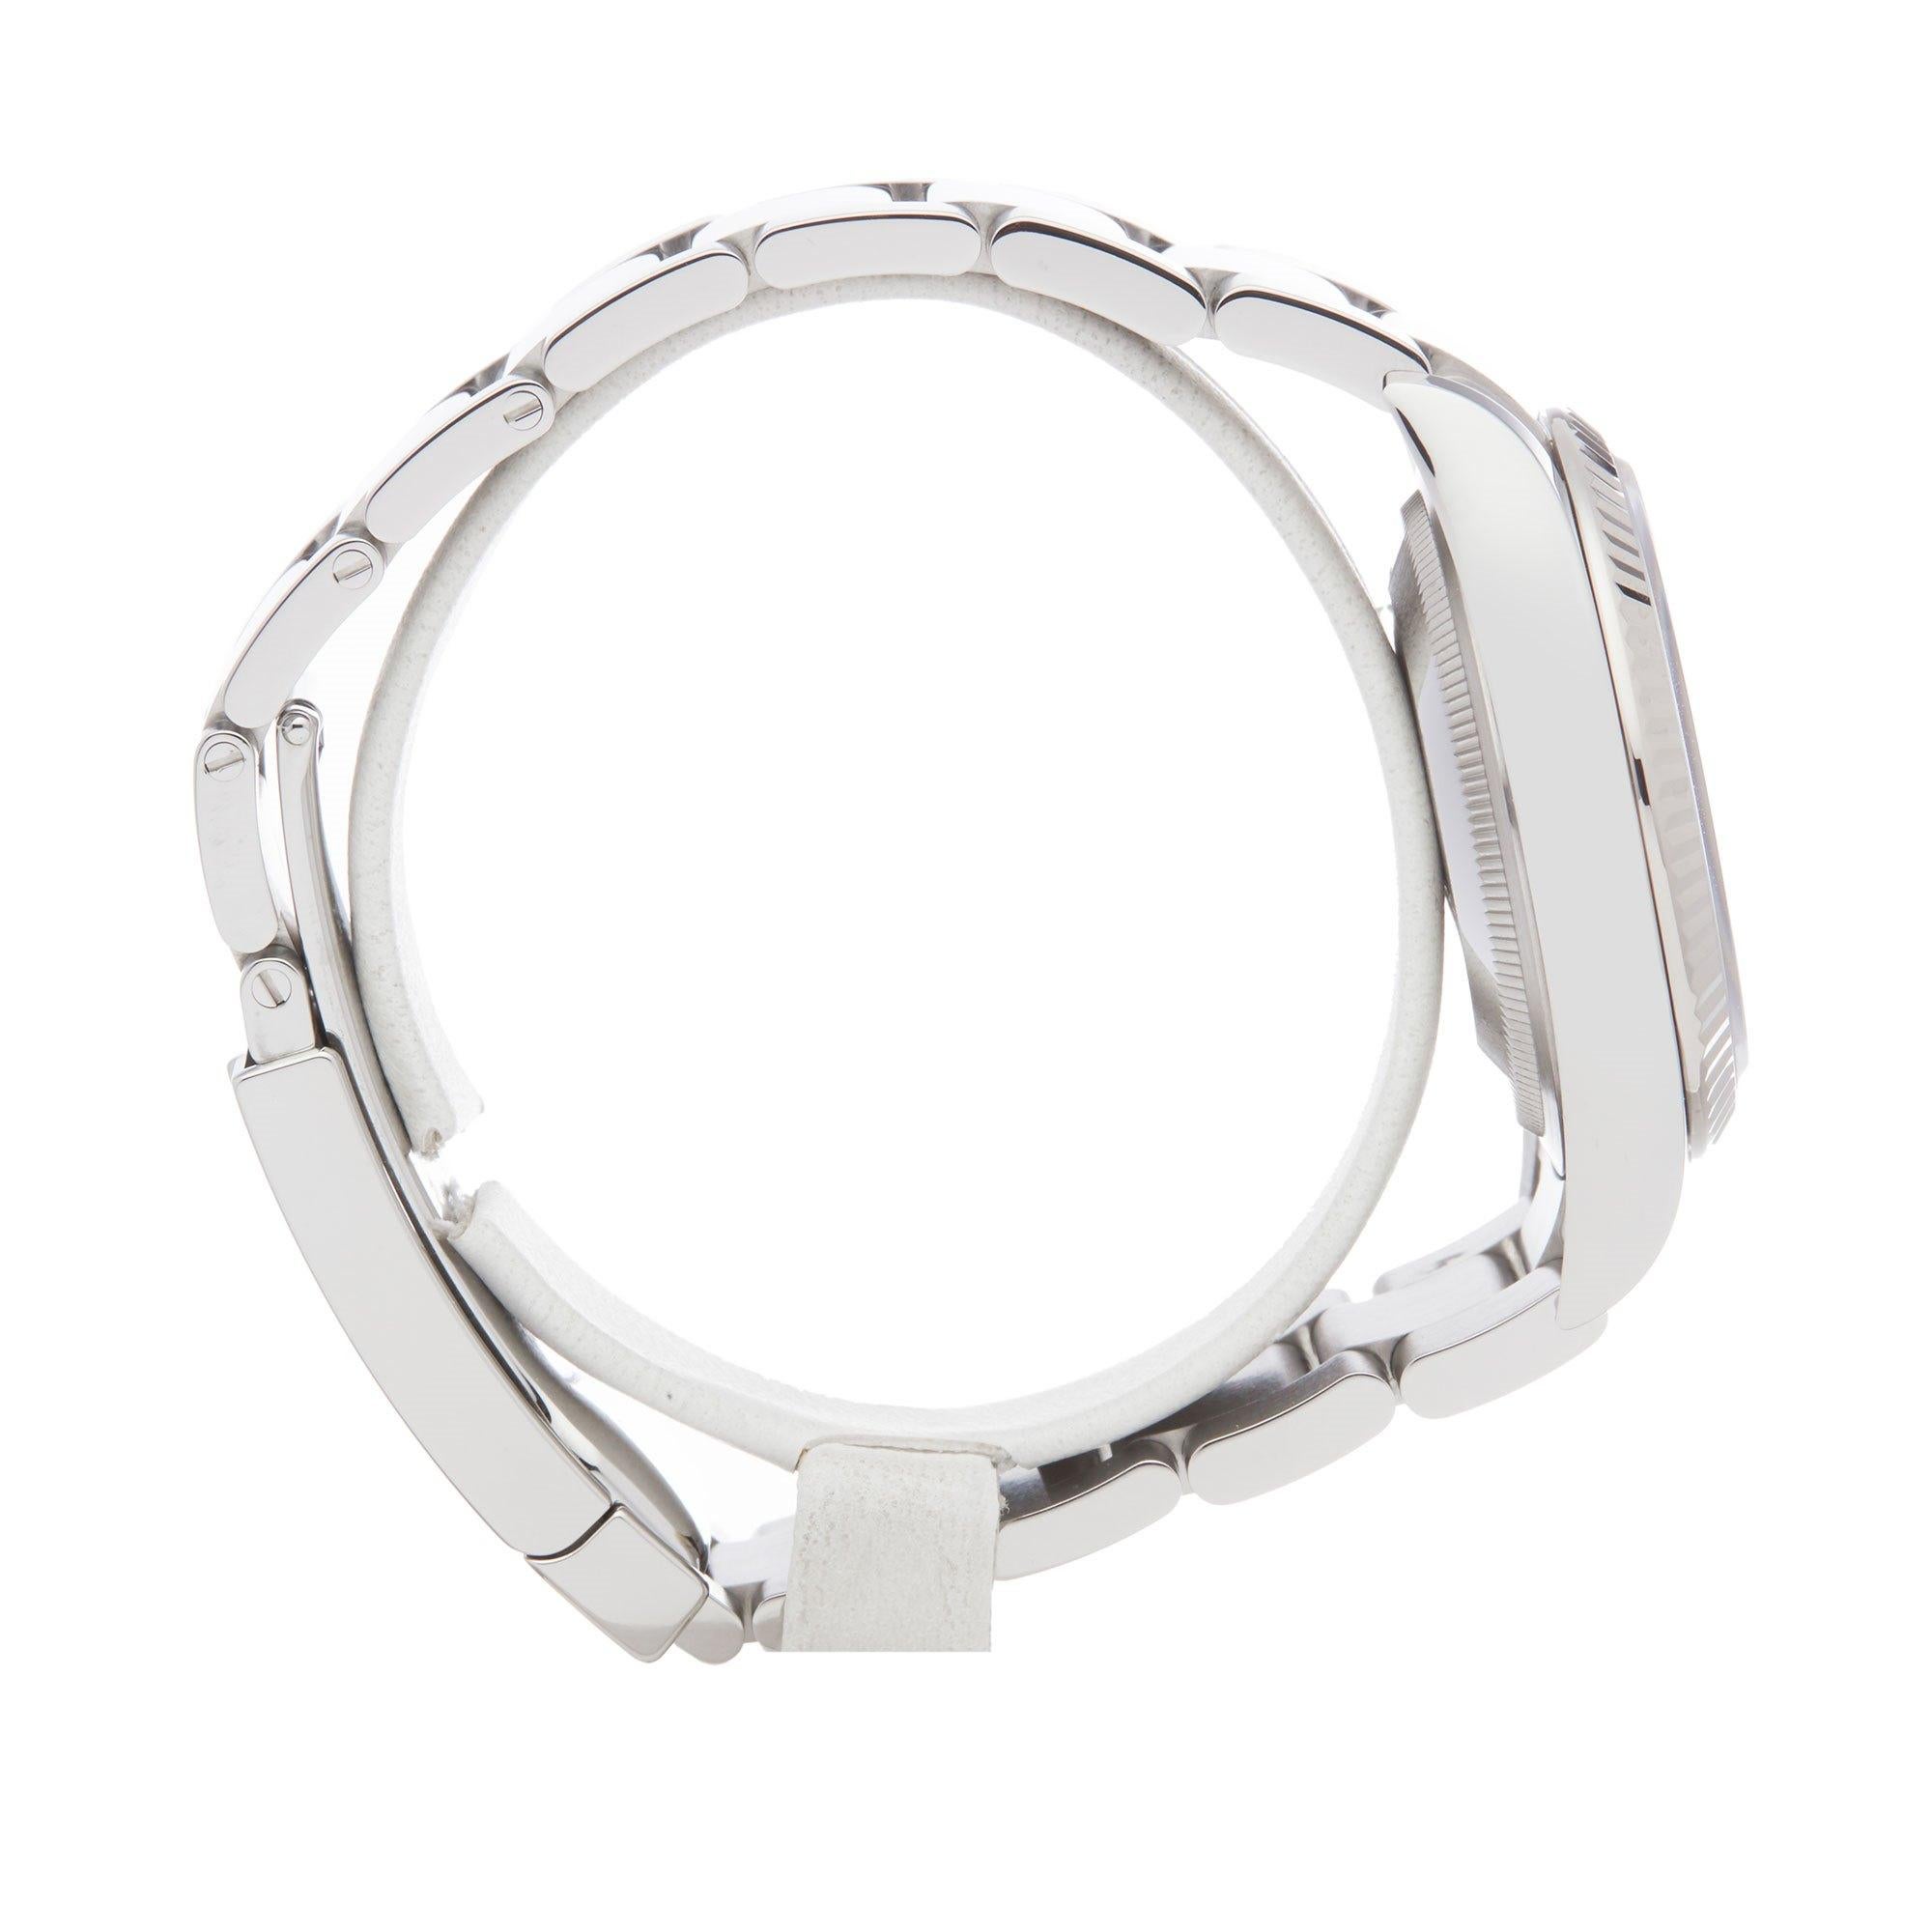 Rolex Datejust 36 126234 Unisex Stainless Steel Watch 1